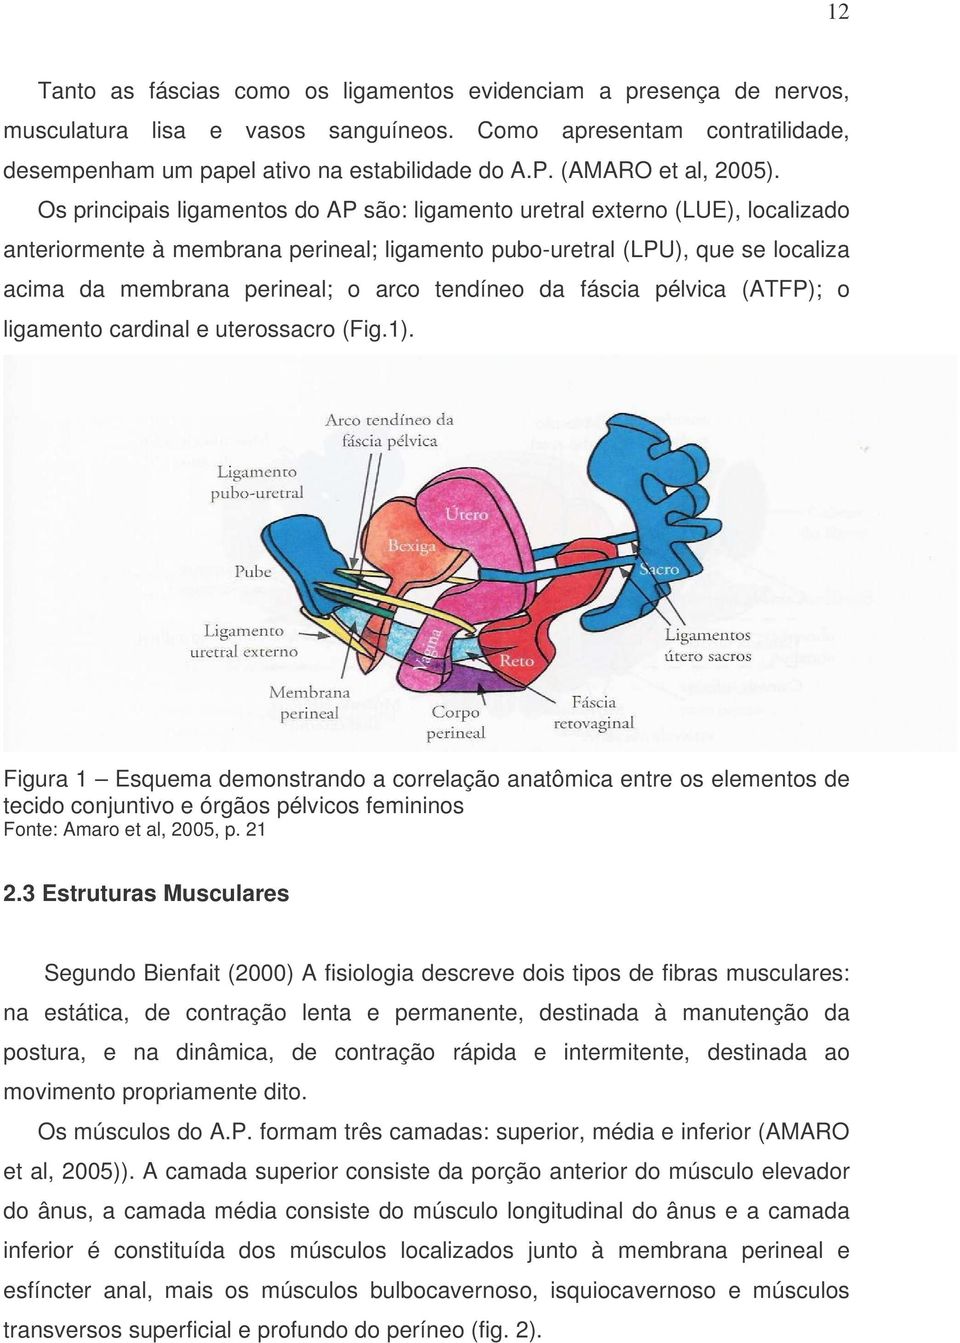 Os principais ligamentos do AP são: ligamento uretral externo (LUE), localizado anteriormente à membrana perineal; ligamento pubo-uretral (LPU), que se localiza acima da membrana perineal; o arco